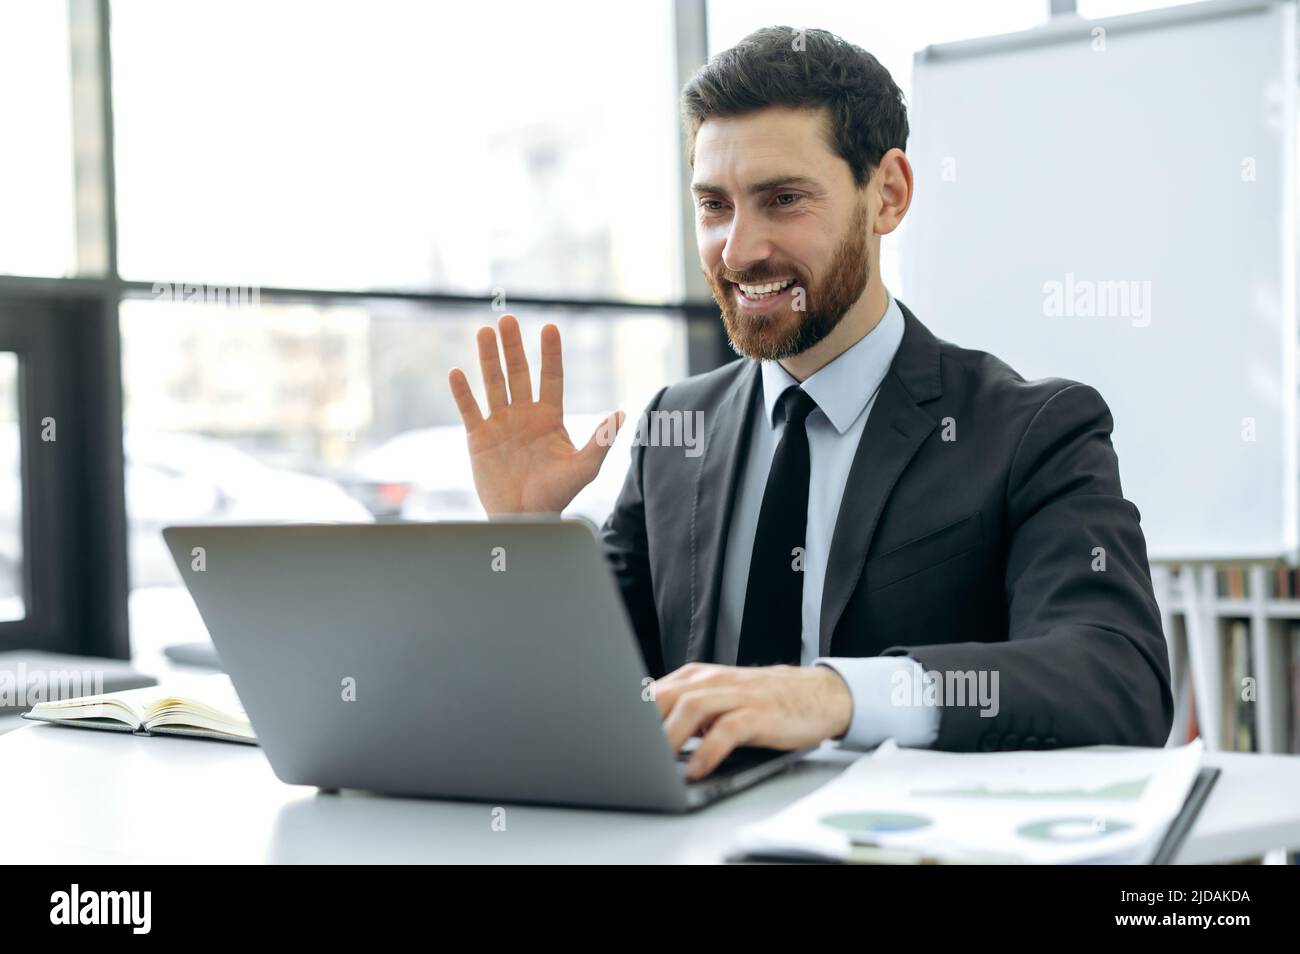 Homme caucasien positif avec une barbe, analyste financier, pdg de la société, assis dans un bureau moderne devant un écran d'ordinateur portable, ayant une réunion vidéo avec des collègues d'affaires, les saluant, souriant Banque D'Images